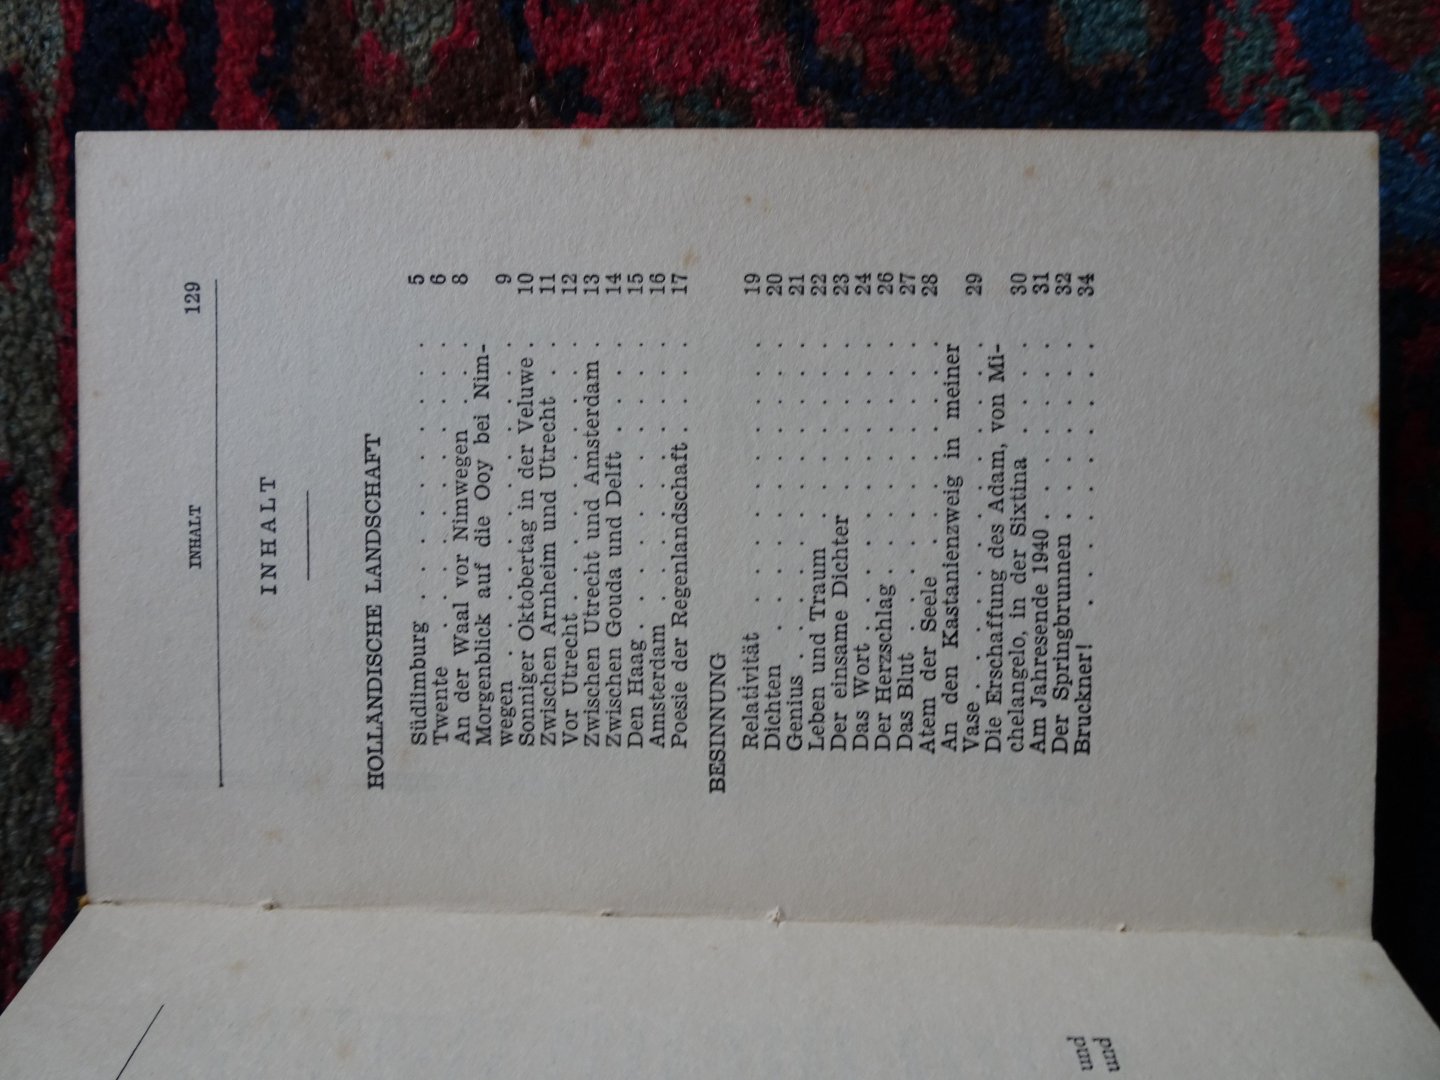 Baader, Theodor - AUS HOLLÄNDISCHER LANDSCHAFT Gedichte 1940/41 Auswahl